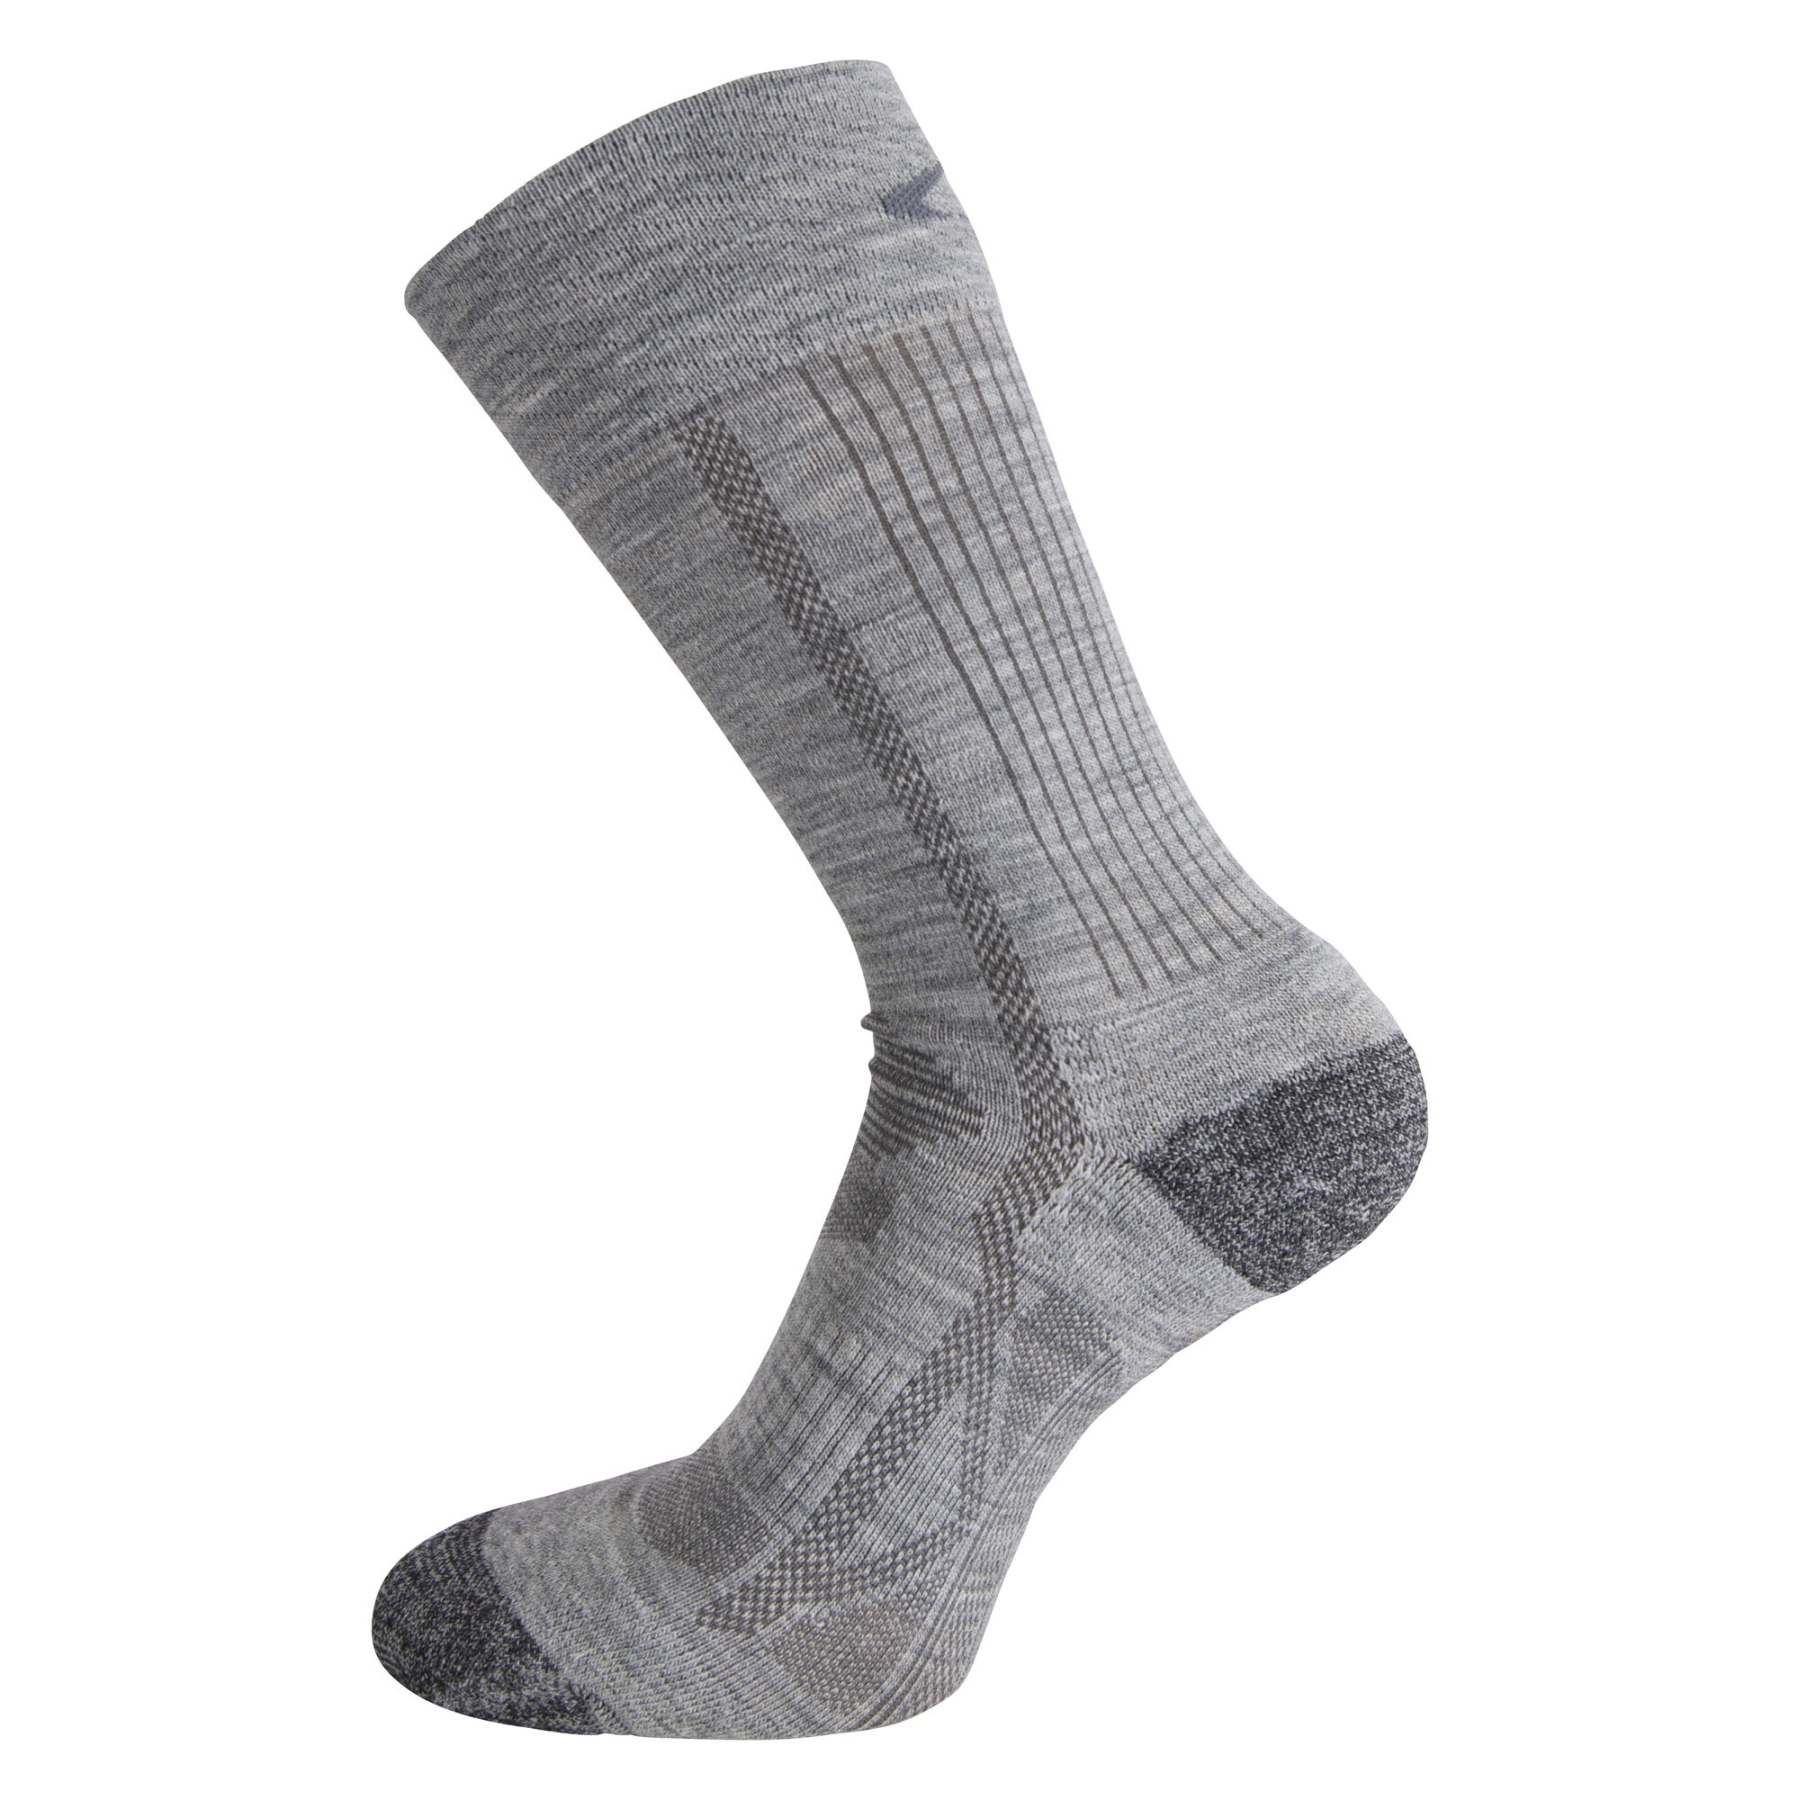 Produktbild von Ulvang Outdoor Socken 2er-Pack - Black/Charcoal Melange